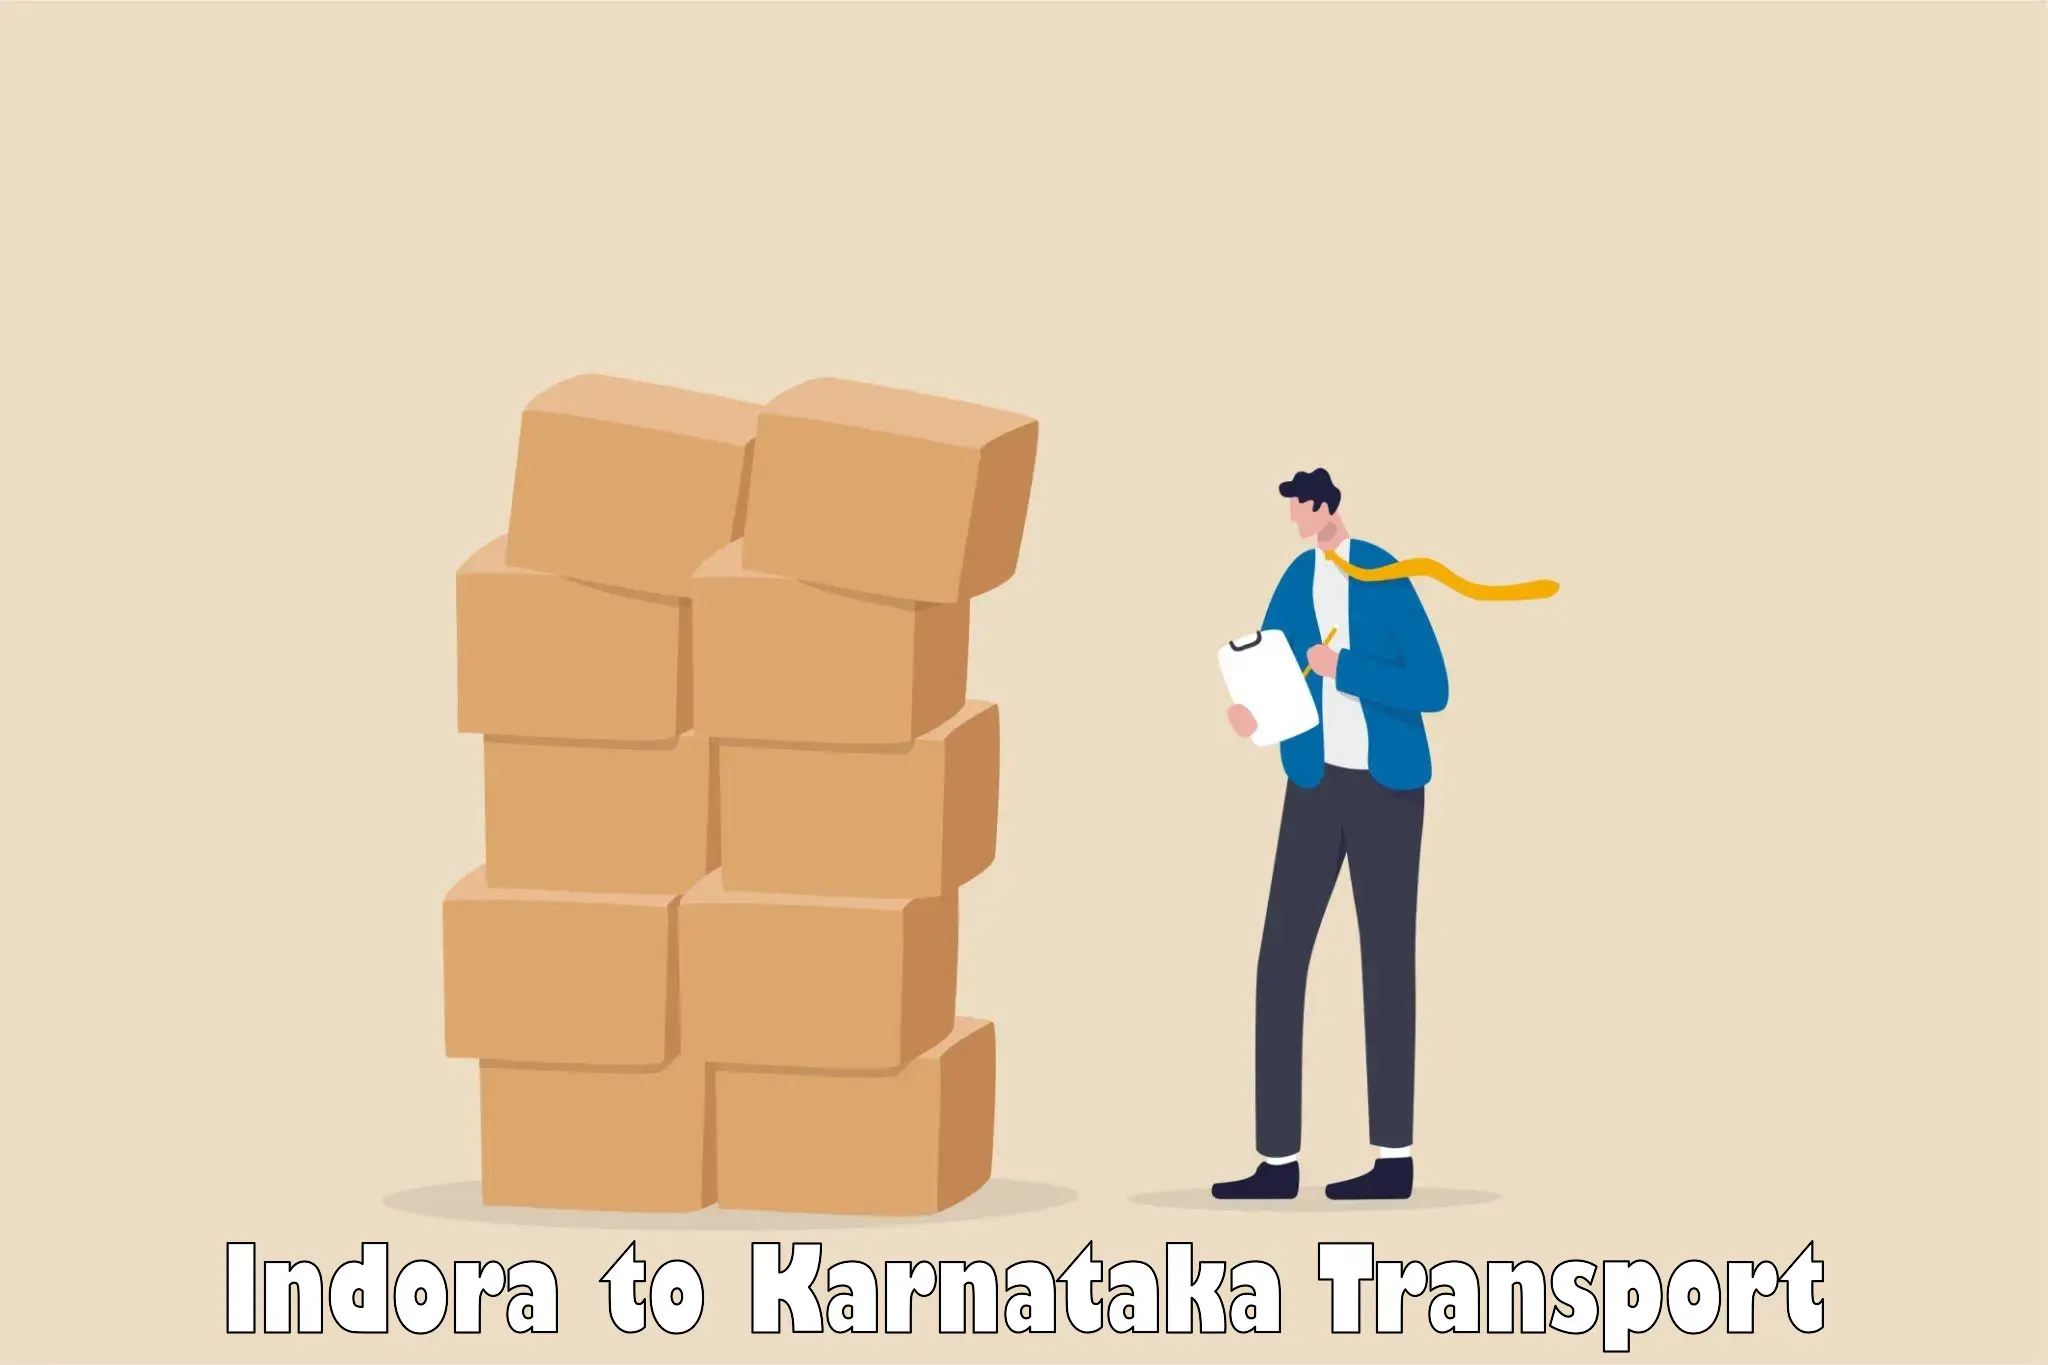 Nearest transport service Indora to Ukkadagatri